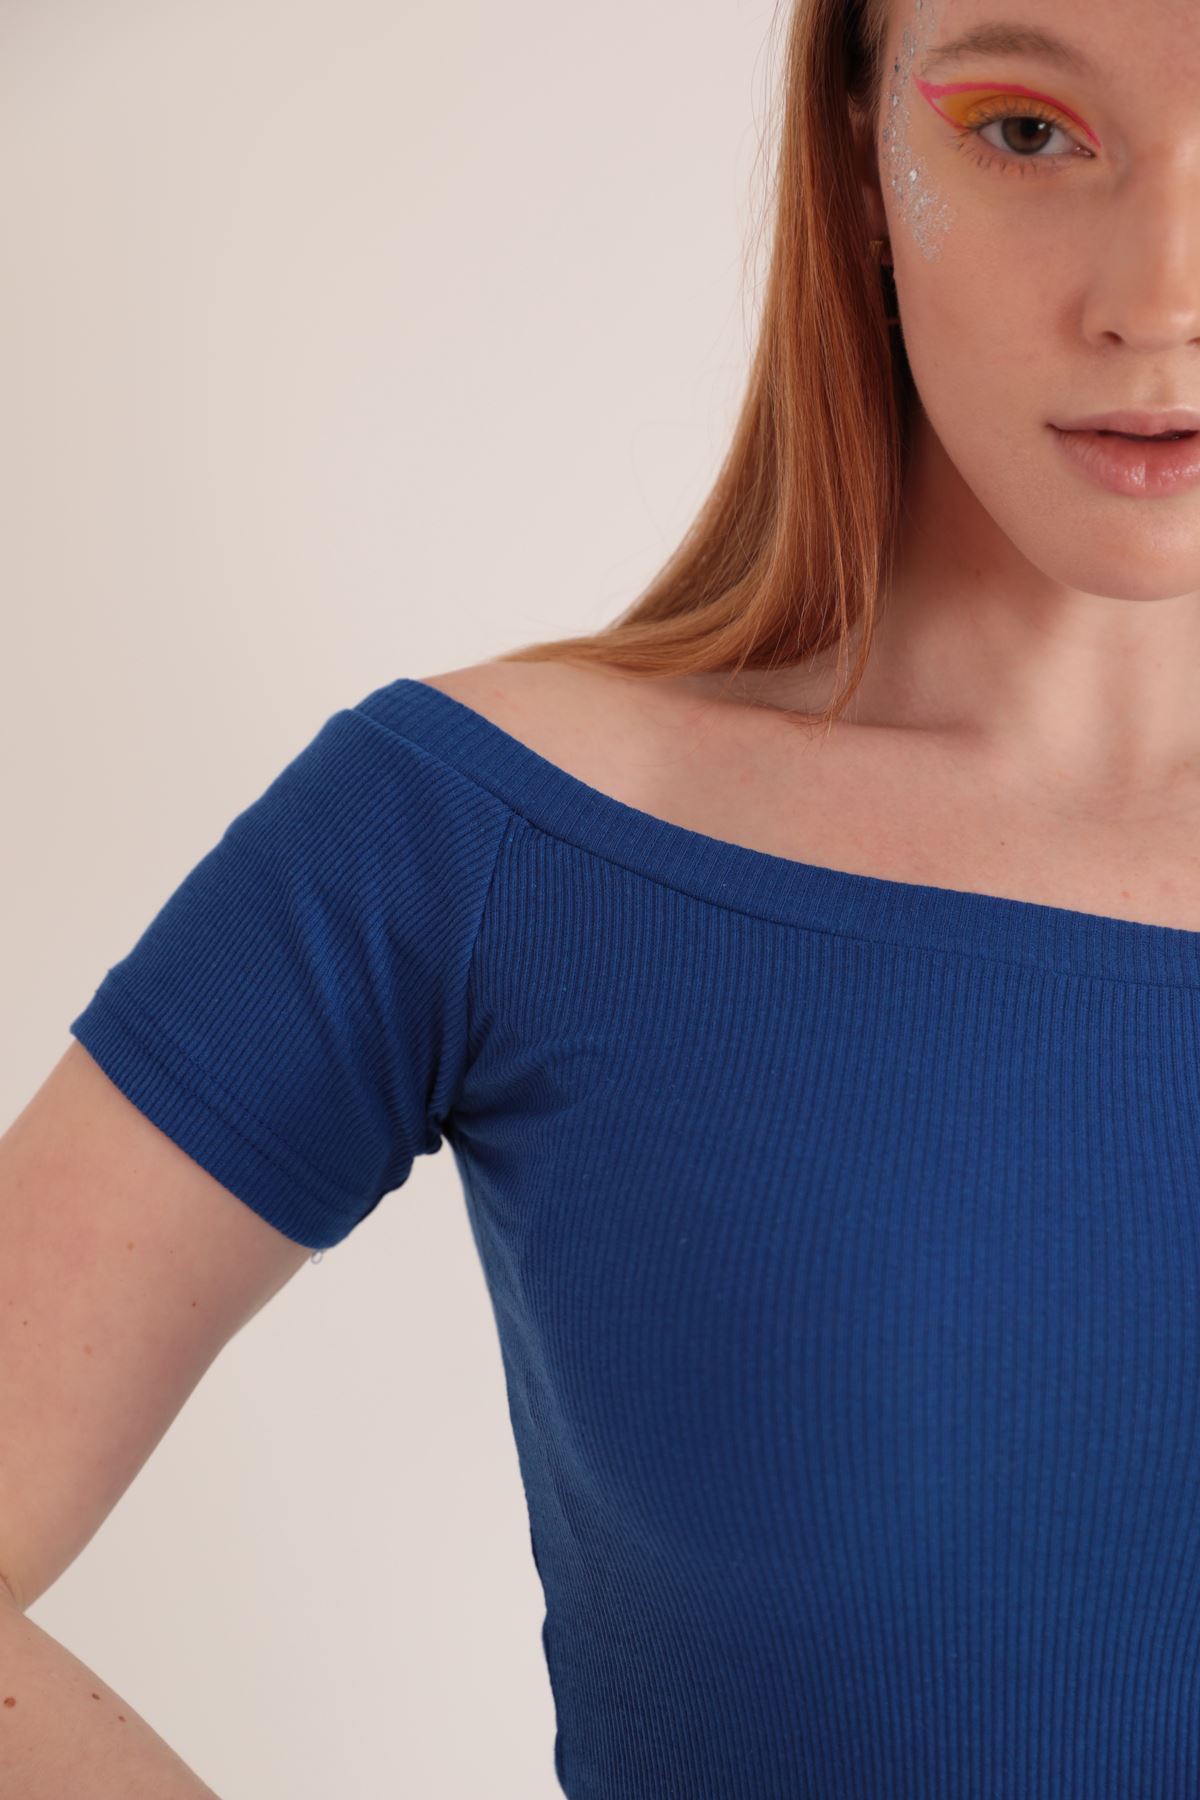 Camisole Fabric Женская блузка с воротником Madonna-Ярко синий